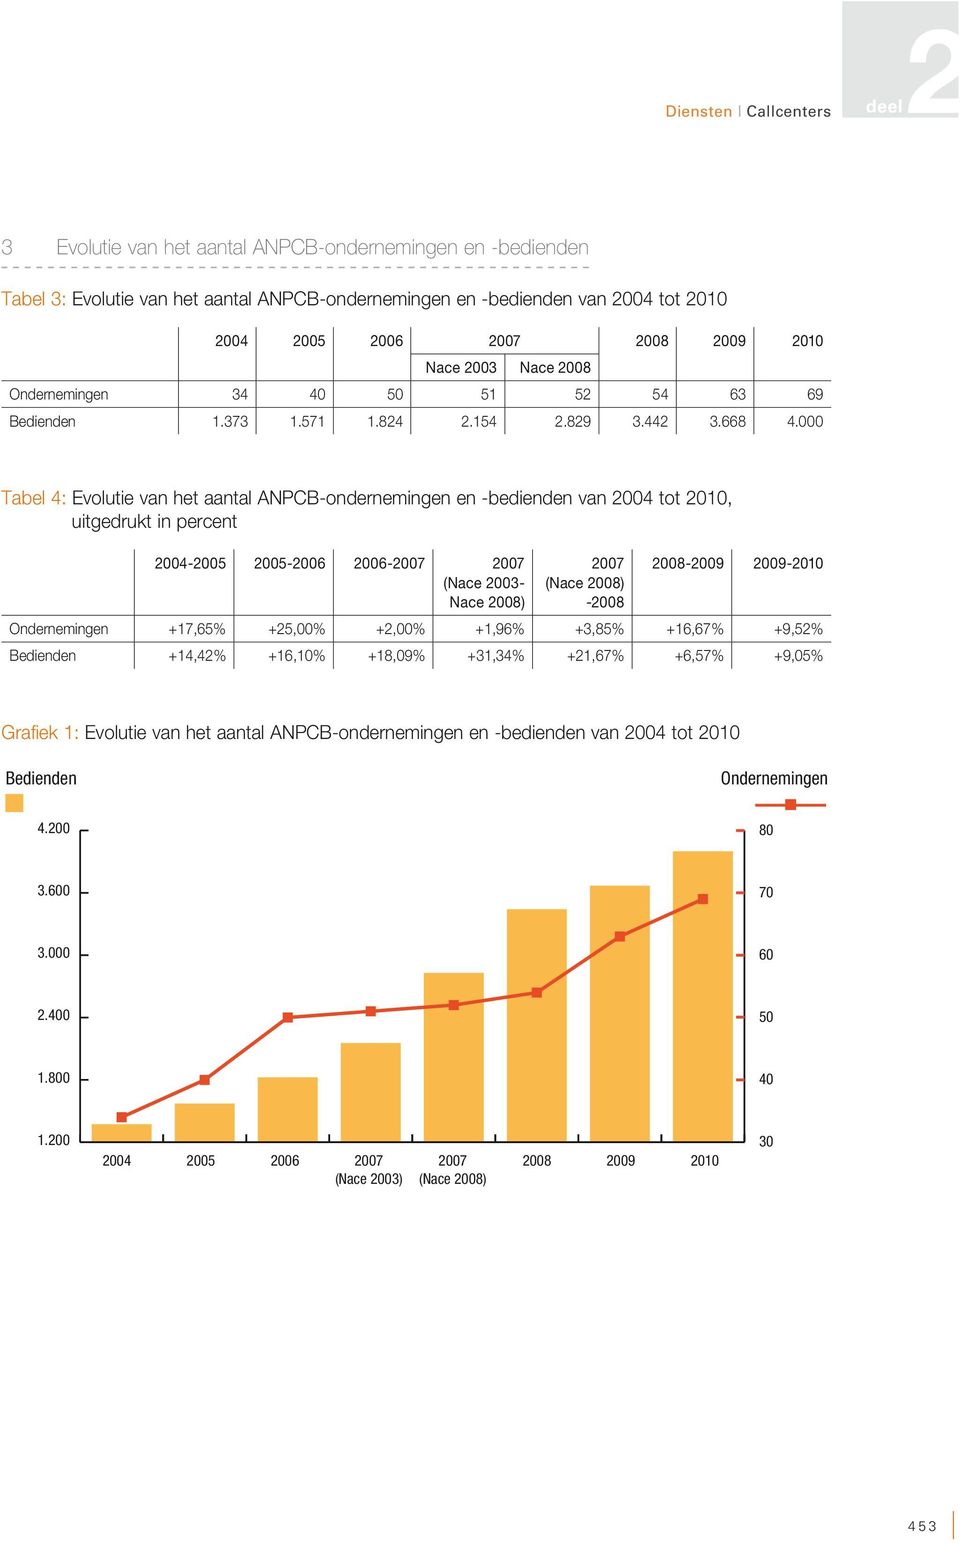 000 Tabel 4: Evolutie van het aantal ANPCB-ondernemingen en -bedienden van 2004 tot 2010, uitgedrukt in percent 2004-2005 2005-2006 2006-2007 2007 (Nace 2003- Nace 2008) 2007 (Nace 2008) -2008